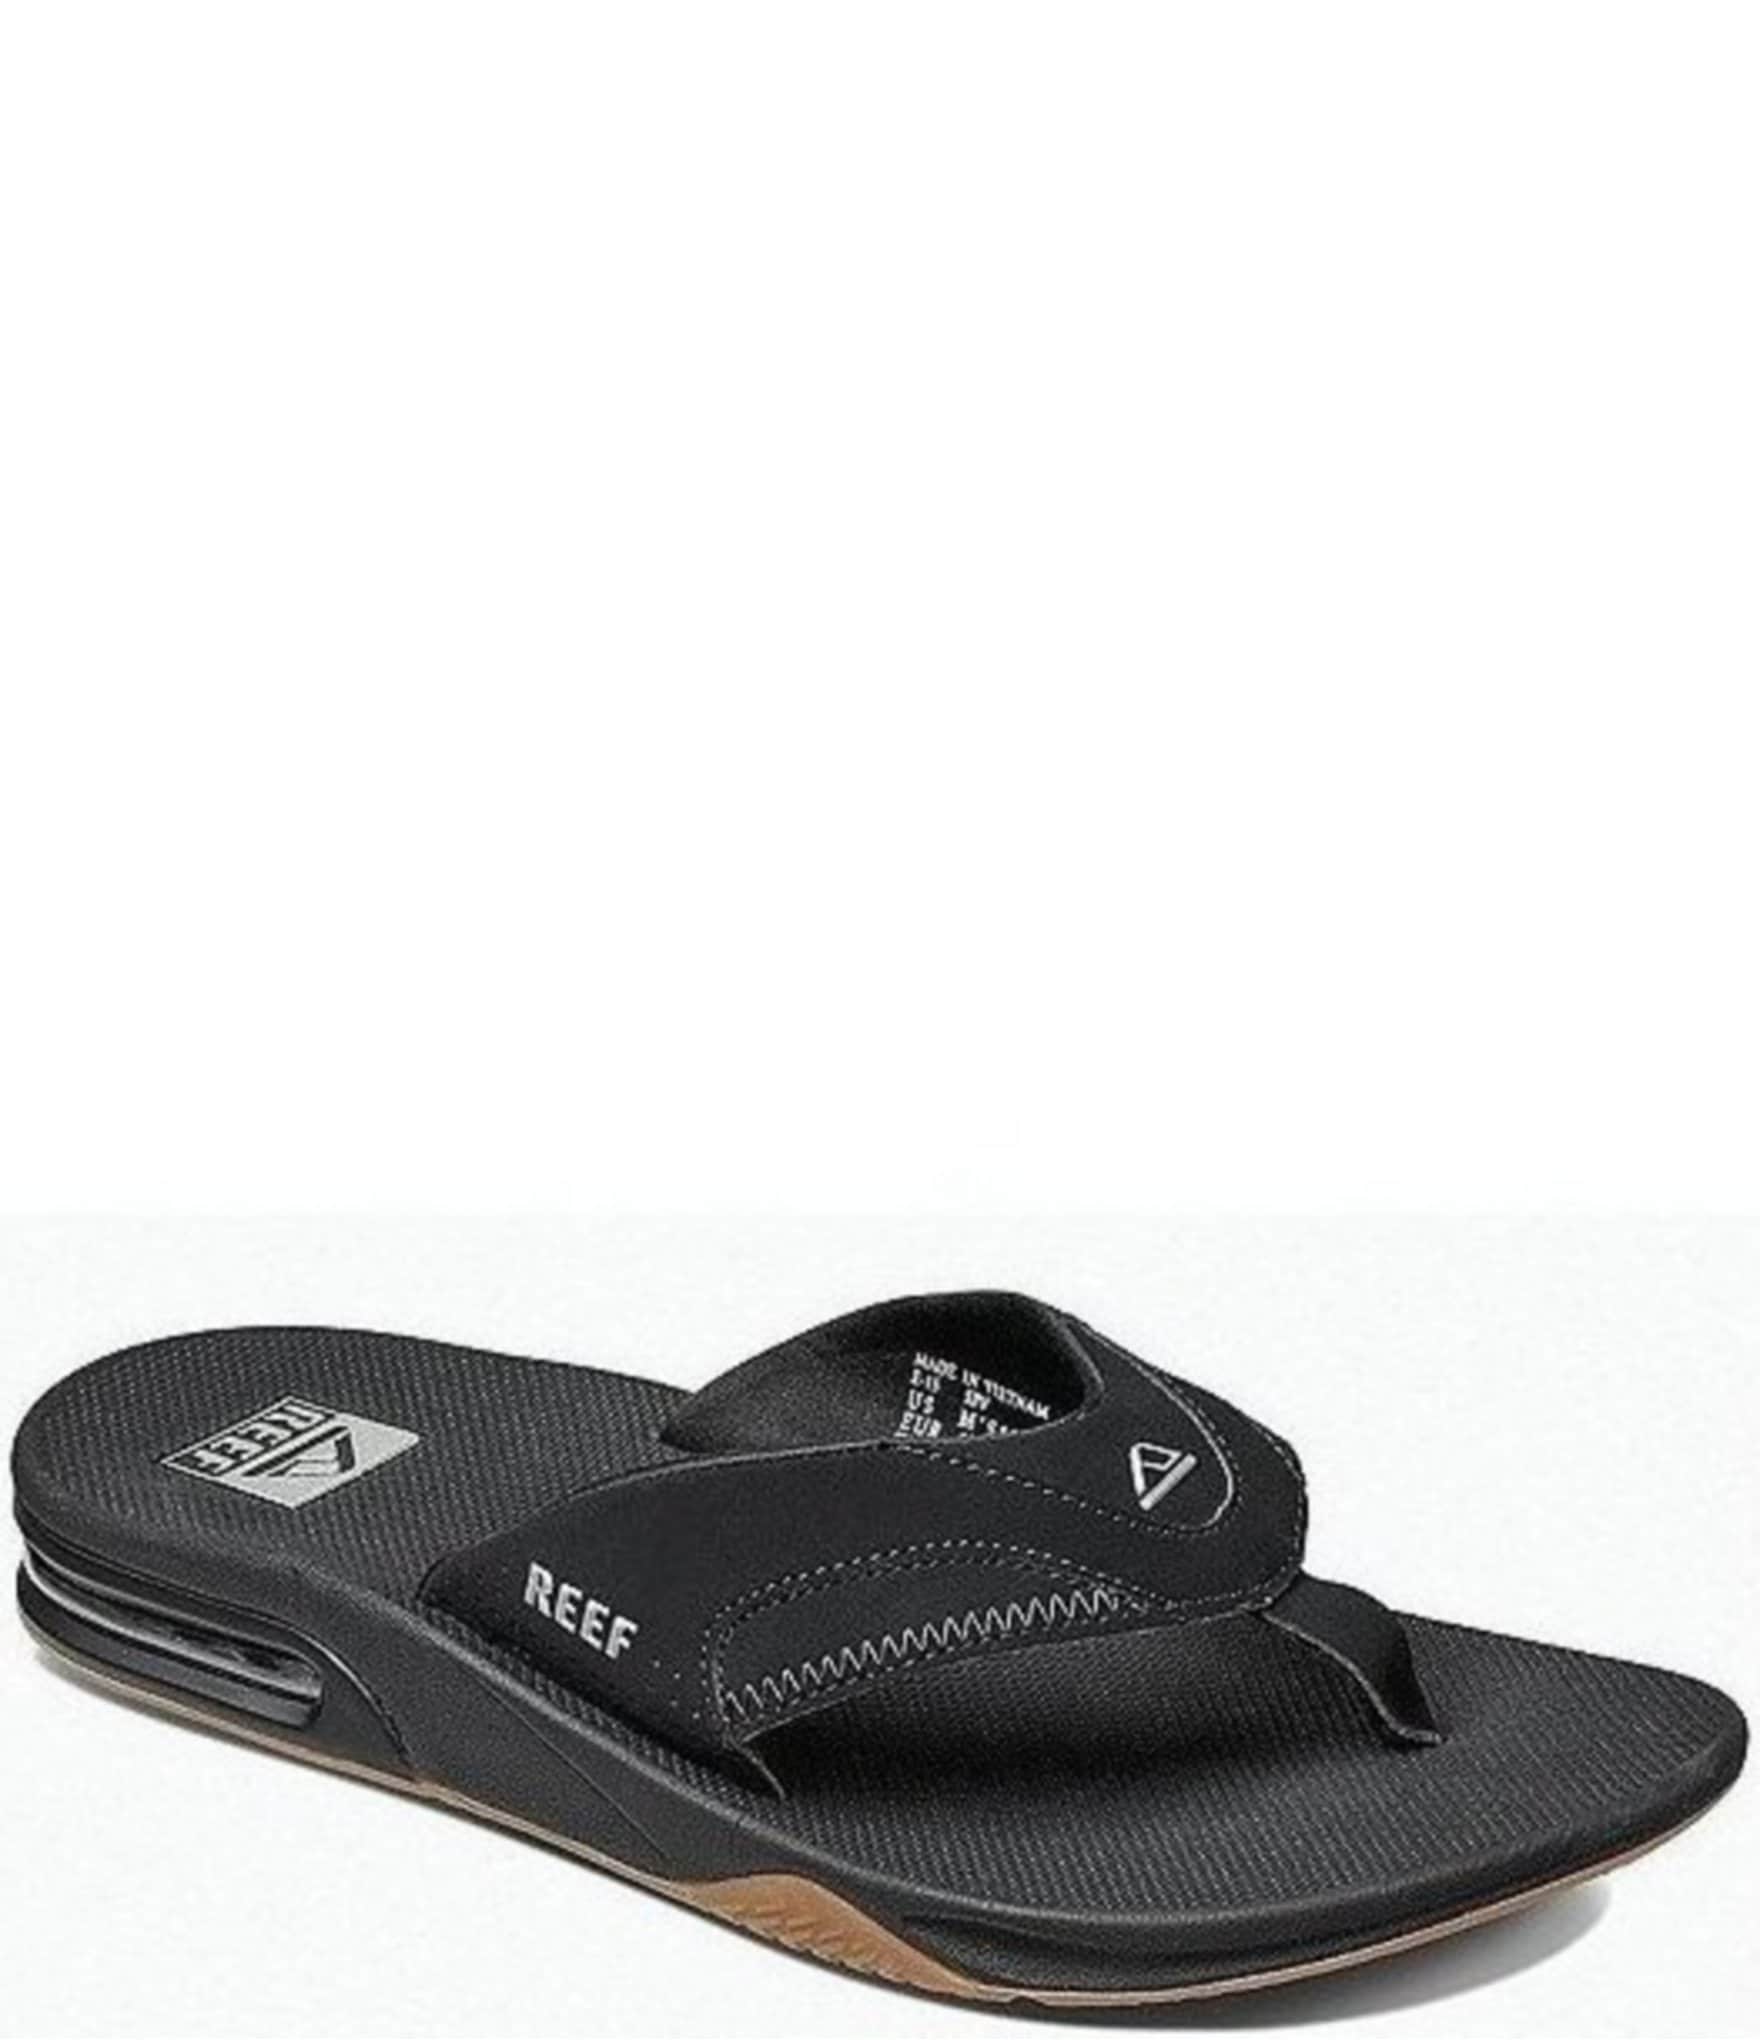 Reef One Black Flip Flop Sandal Men's Size 100% Original New